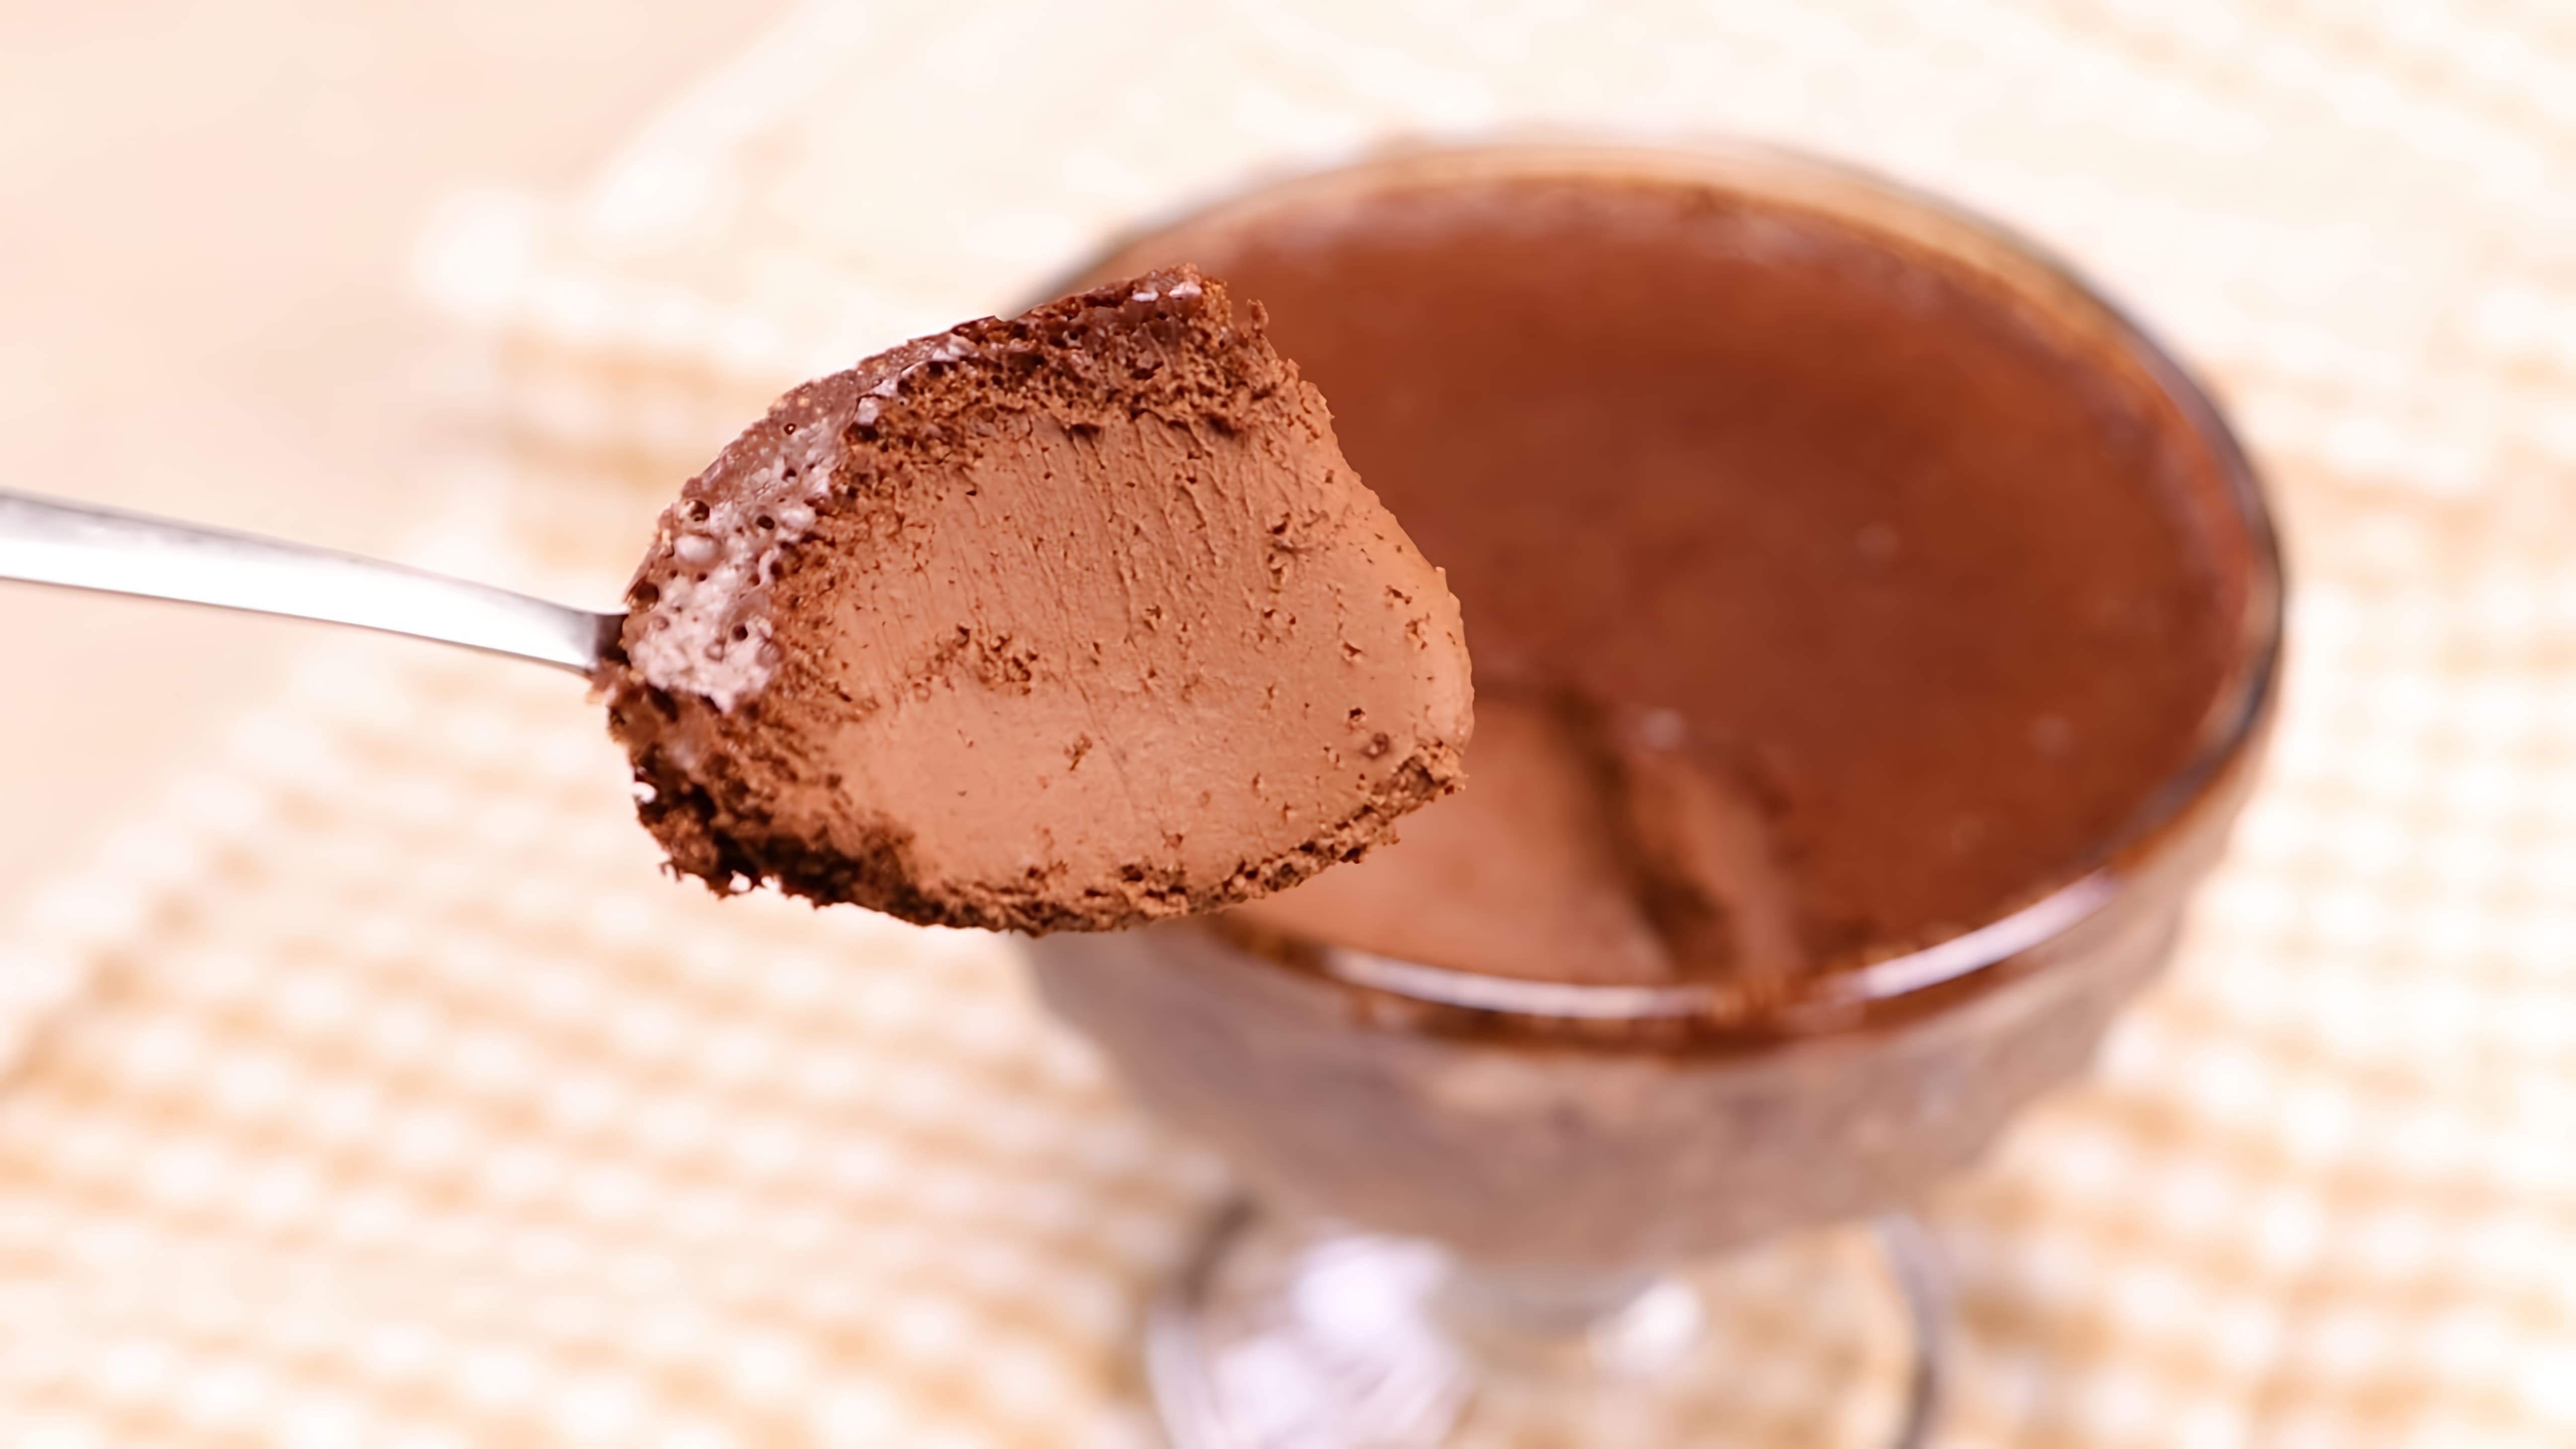 Десерт можно приготовить всего за 10 минут всего из двух ингредиентов - шоколада и молока